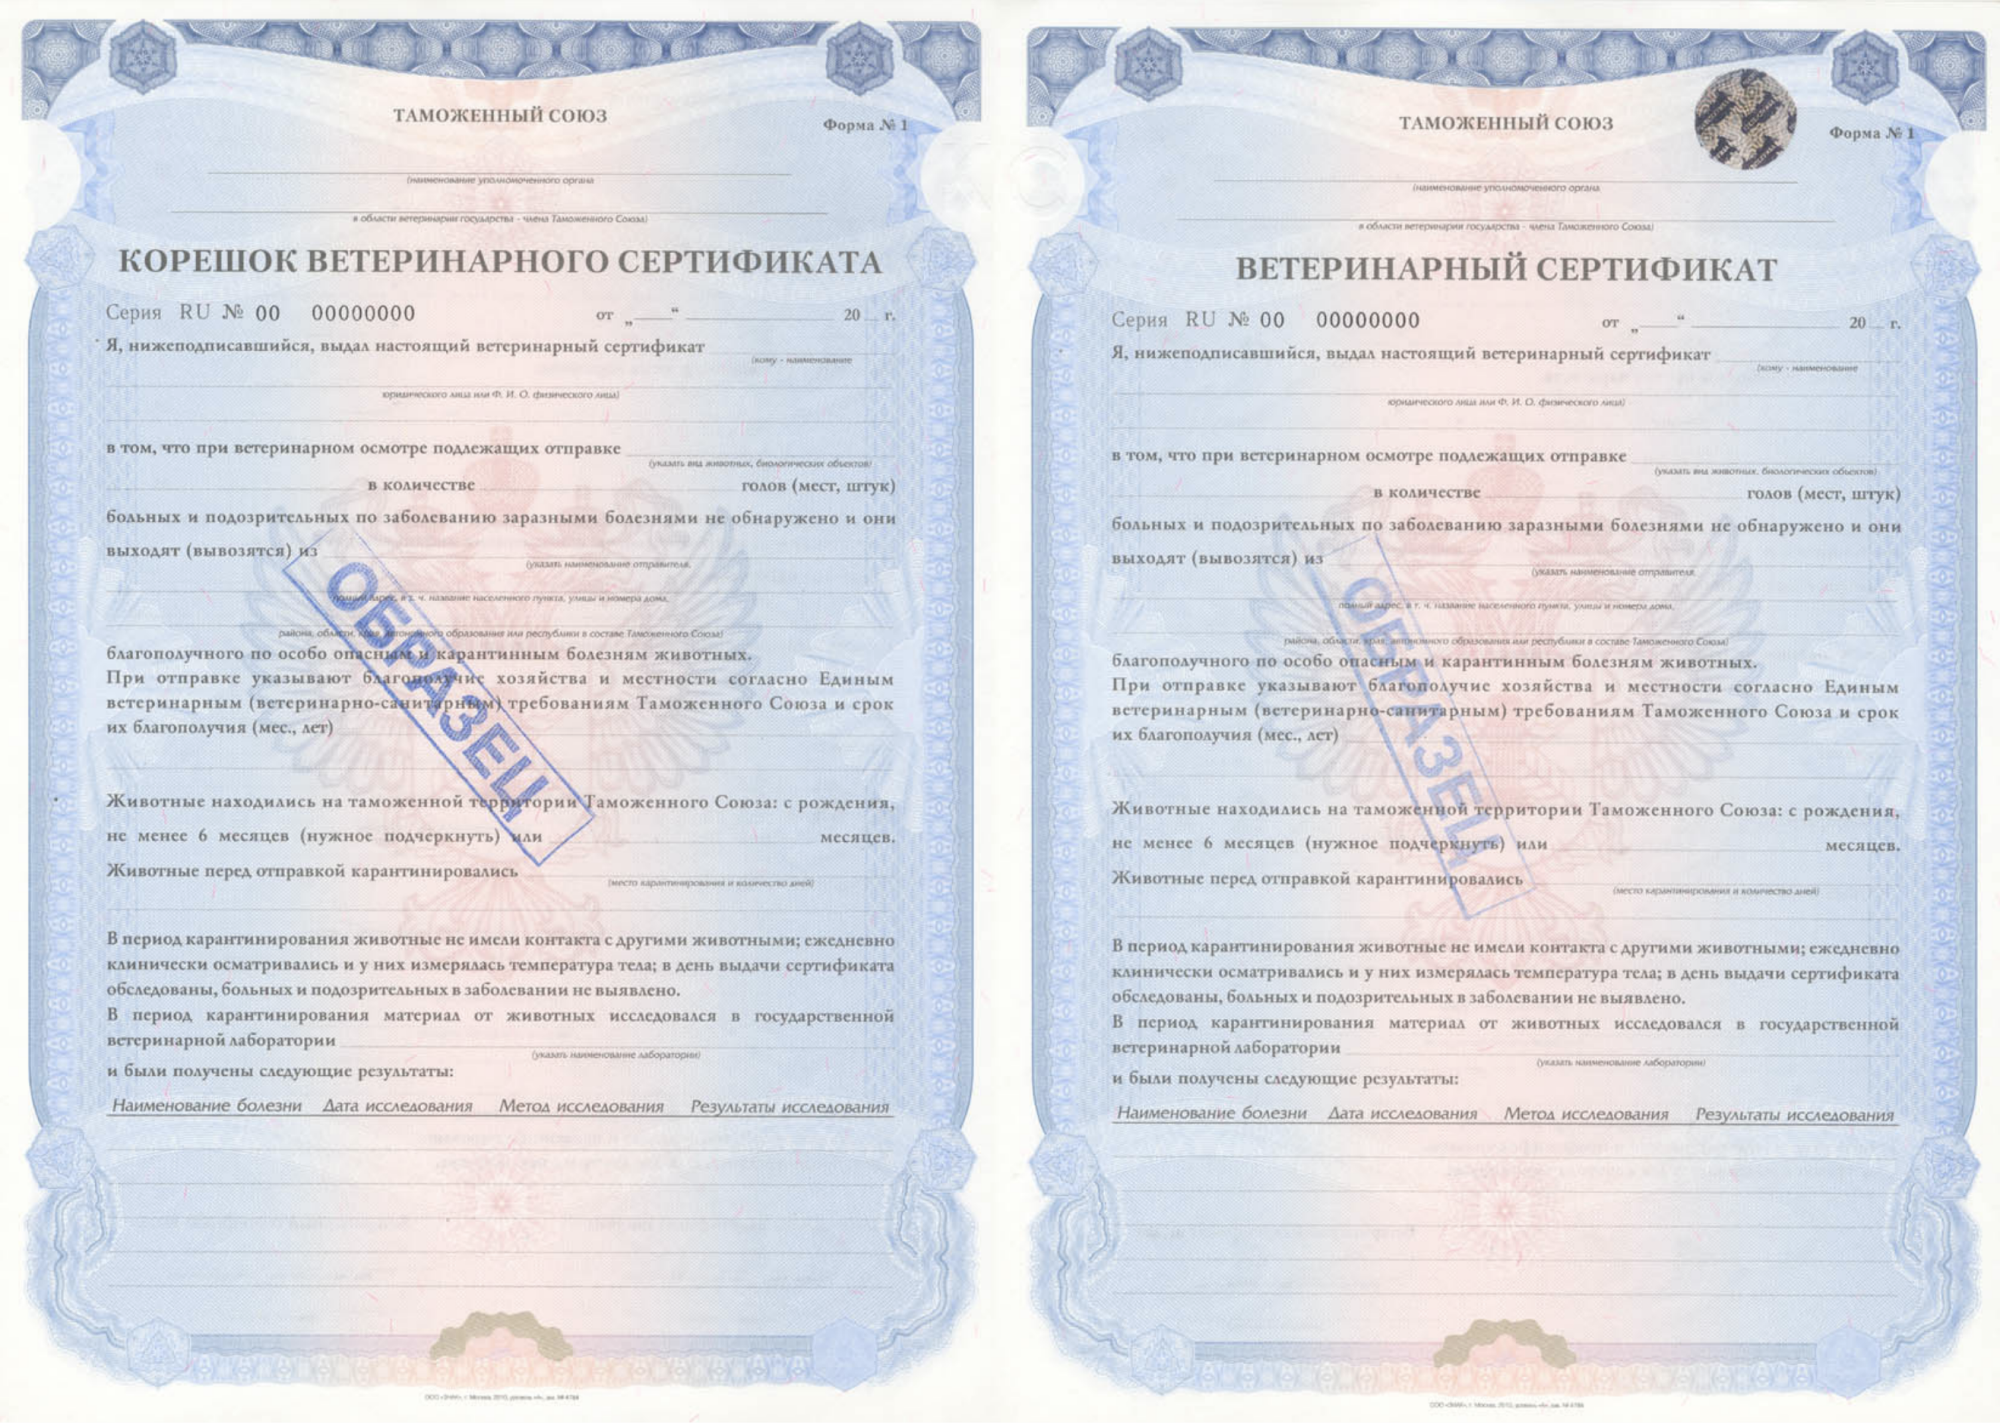 Ветеринарный сертификат таможенного Союза формы №1.. Ветеринарный сертификат форма № 38. Ветеринарный сертификат таможенный Союз Казахстан форма 1. Корешок ветеринарного свидетельства форма 1. Ветеринарная сертификация